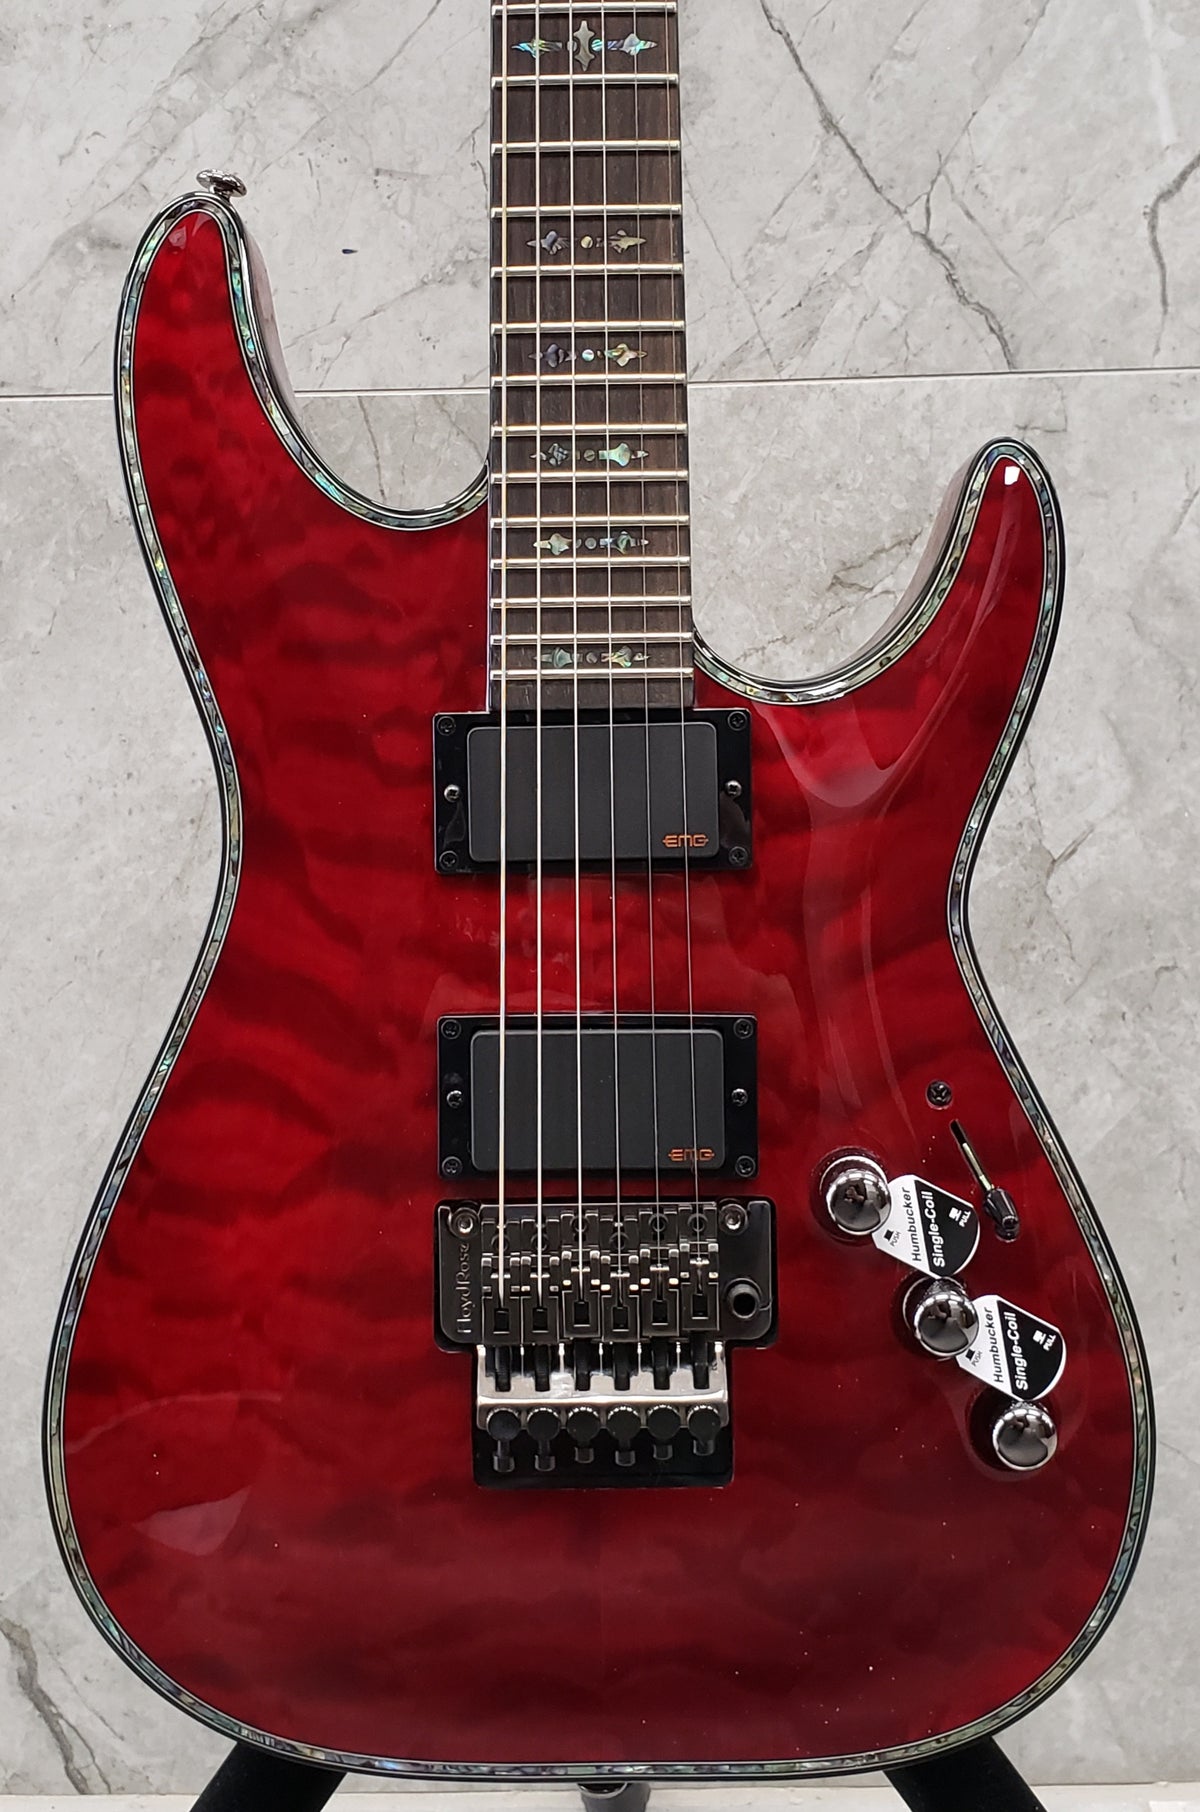 Schecter Hellraiser Series HR-C-1-FR-BCH Black Cherry Guitar with